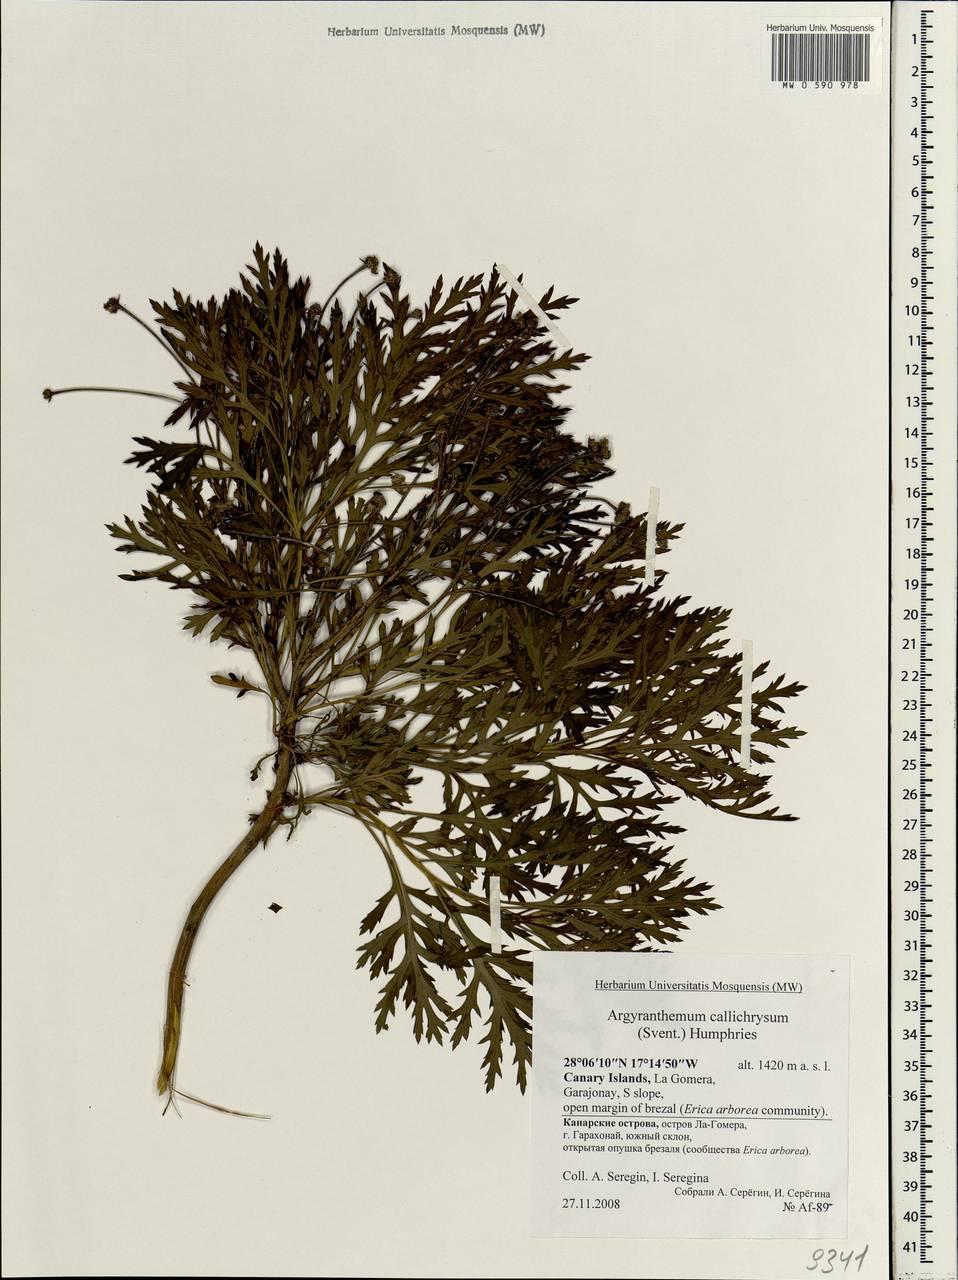 Argyranthemum callichrysum (Svent.) Humphries, Africa (AFR) (Spain)